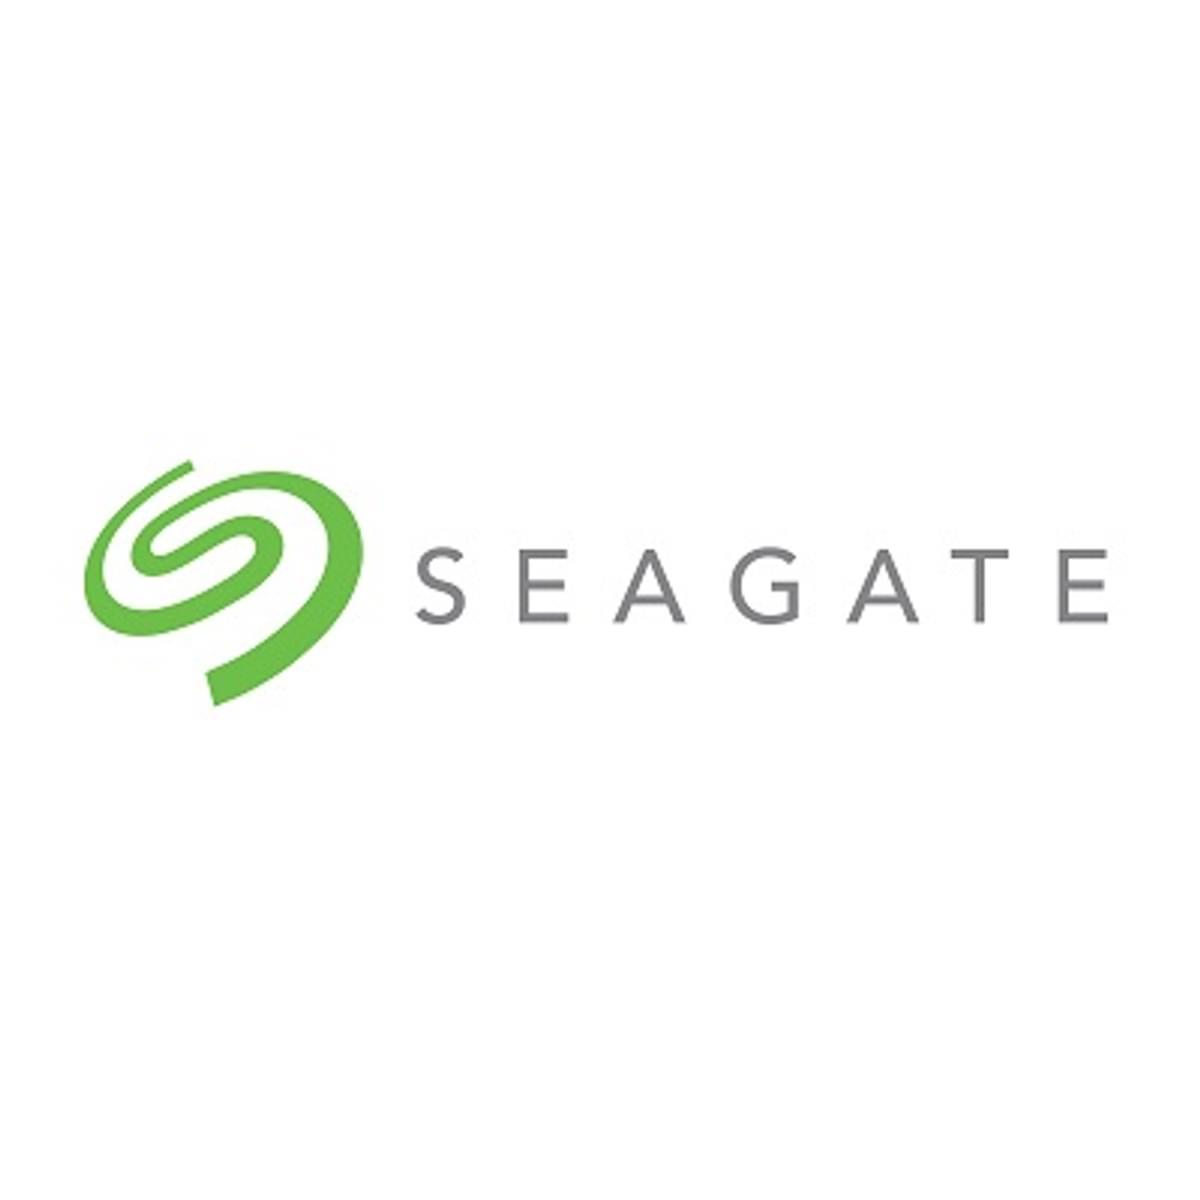 Seagate sluit boekjaar af met flinke omzet daling image